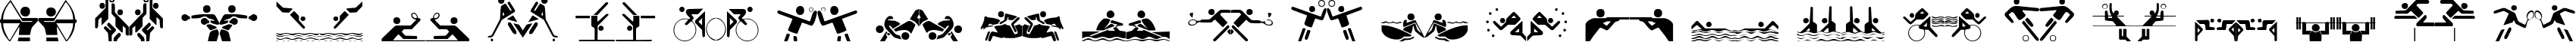 Пример написания английского алфавита шрифтом Olympicons Regular